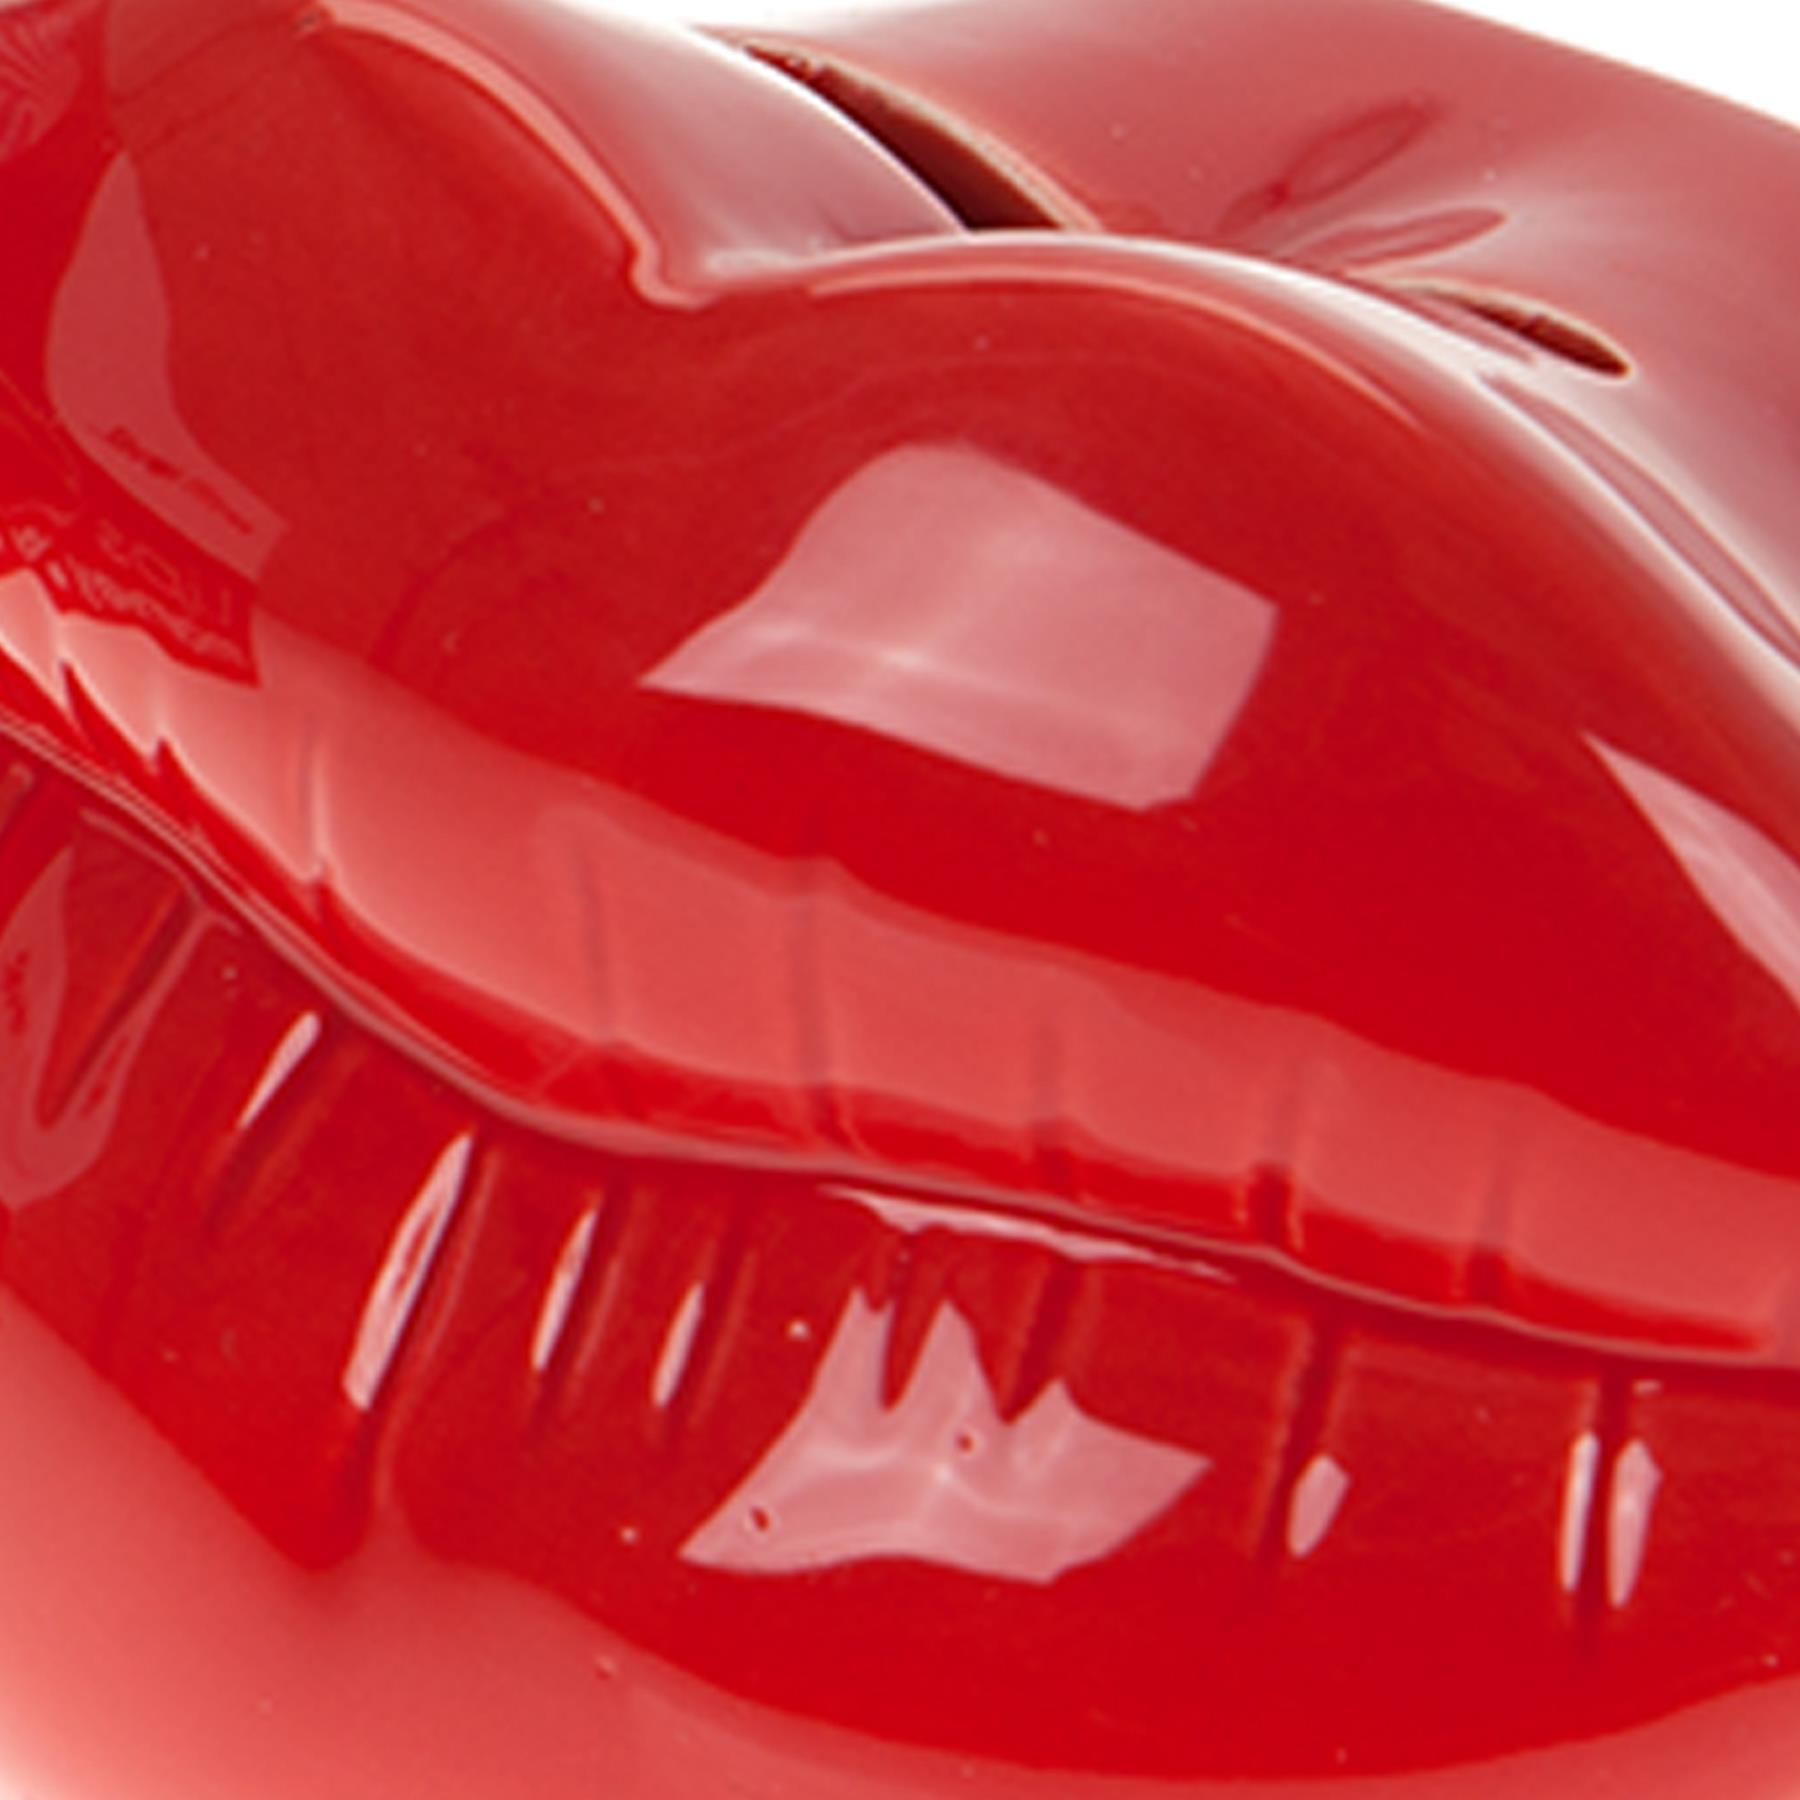 Valentine's Day Novelty Gift - Red Lips Shape Money Box